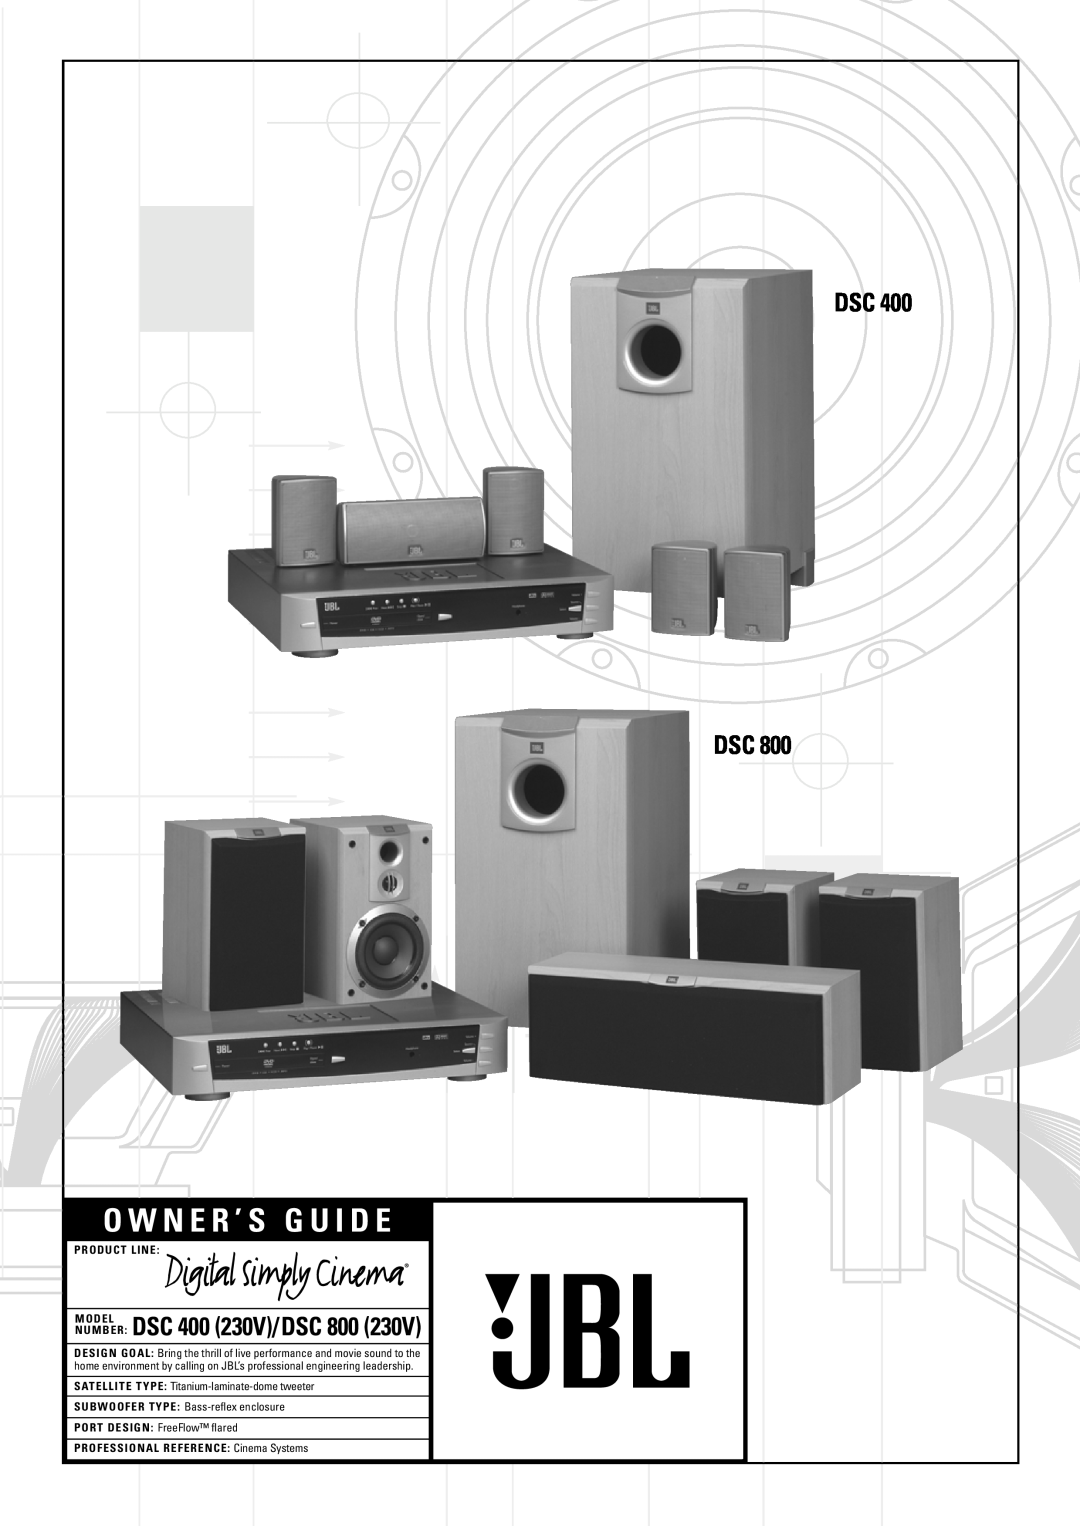 JBL DSC 800 manual O W N E R ’ S G U I D E, X + 0 + Y 2 0 M H Z, Dsc Dsc, NUMBER DSC 400 230V/DSC, Product Line, Model 